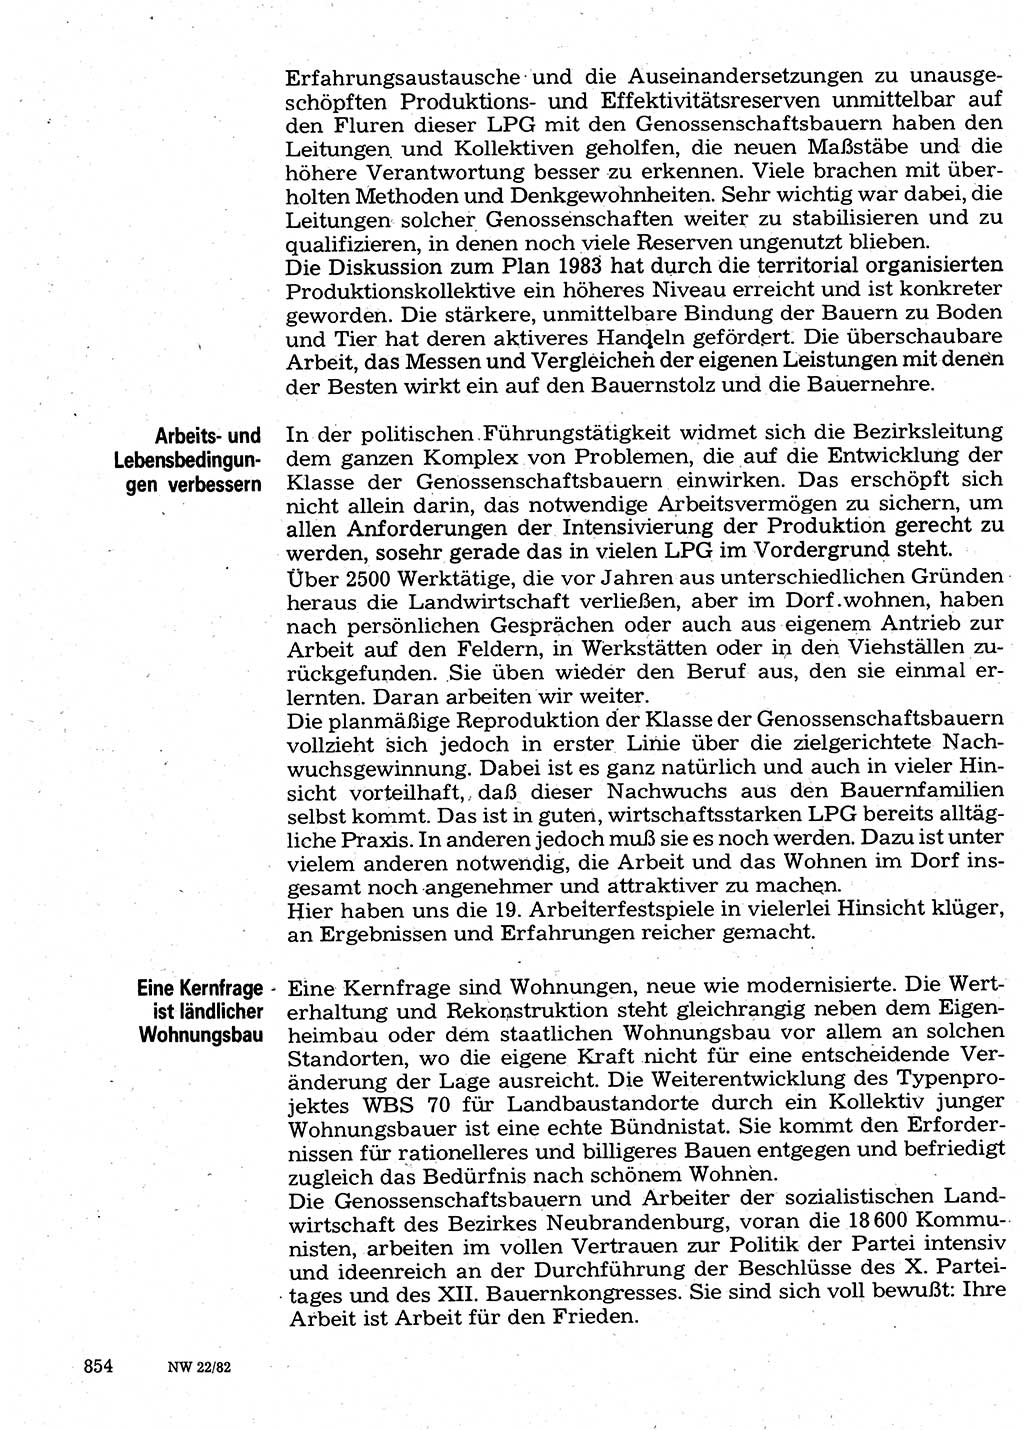 Neuer Weg (NW), Organ des Zentralkomitees (ZK) der SED (Sozialistische Einheitspartei Deutschlands) für Fragen des Parteilebens, 37. Jahrgang [Deutsche Demokratische Republik (DDR)] 1982, Seite 854 (NW ZK SED DDR 1982, S. 854)